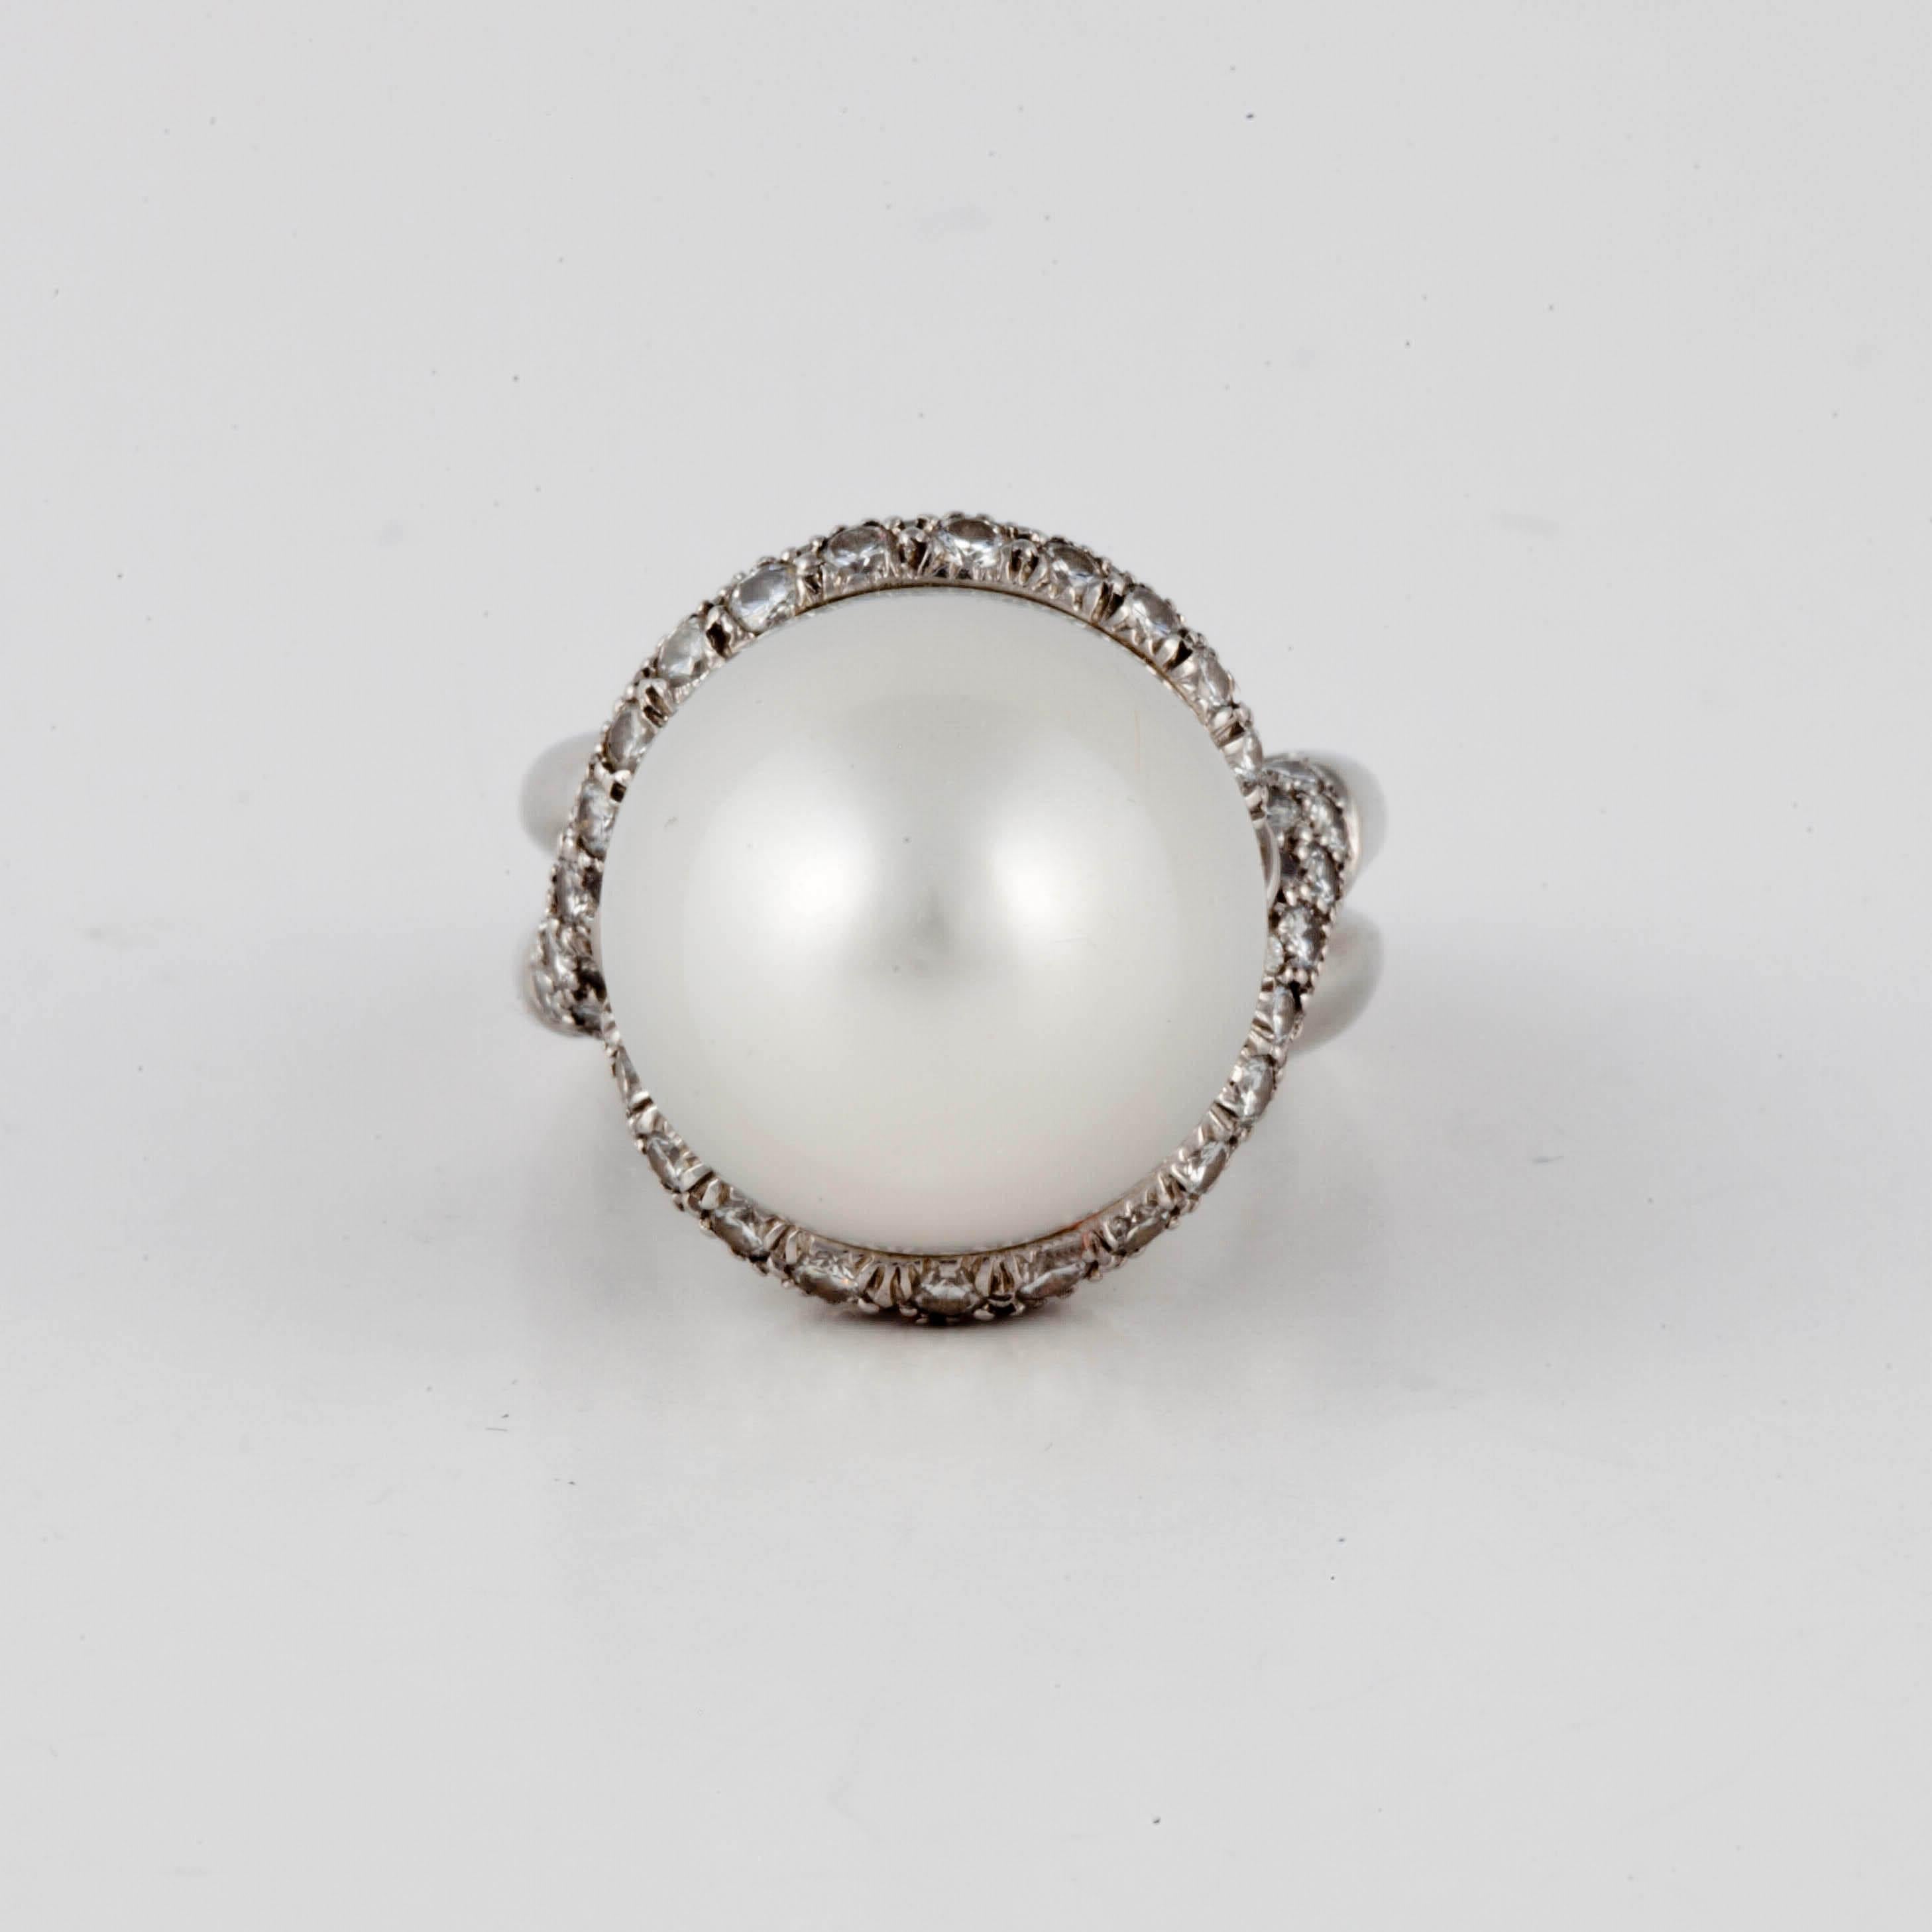 Bague Henry Dunay en platine présentant une grande perle baroque entourée de diamants.  La perle est entourée de 82 diamants ronds d'un total de 3,28 carats, de couleur G-H et de pureté VS1-2.  La bague est une taille 6 avec un insert papillon. 